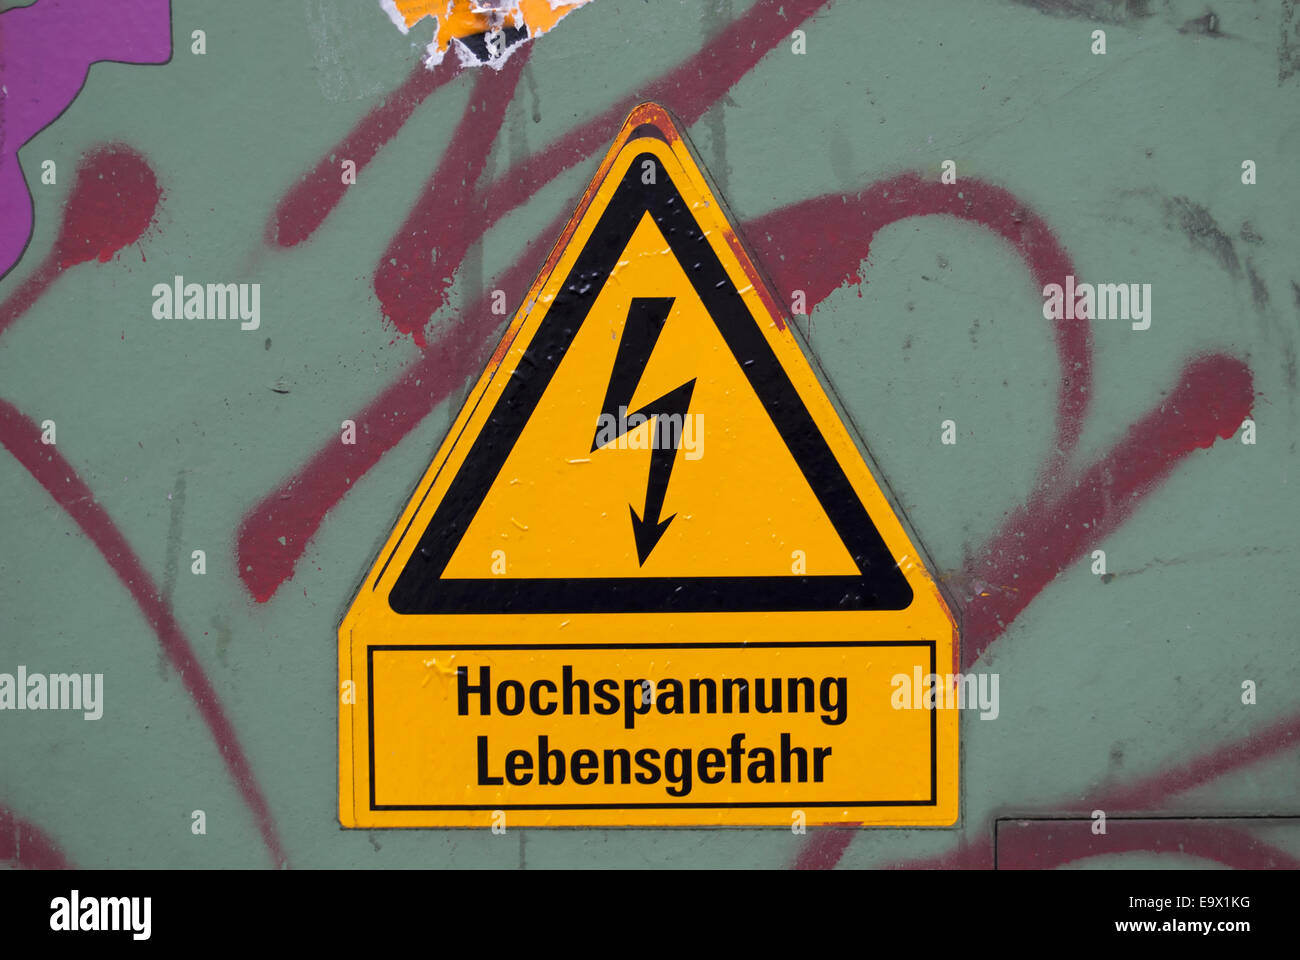 german language sign warning danger high voltage Stock Photo